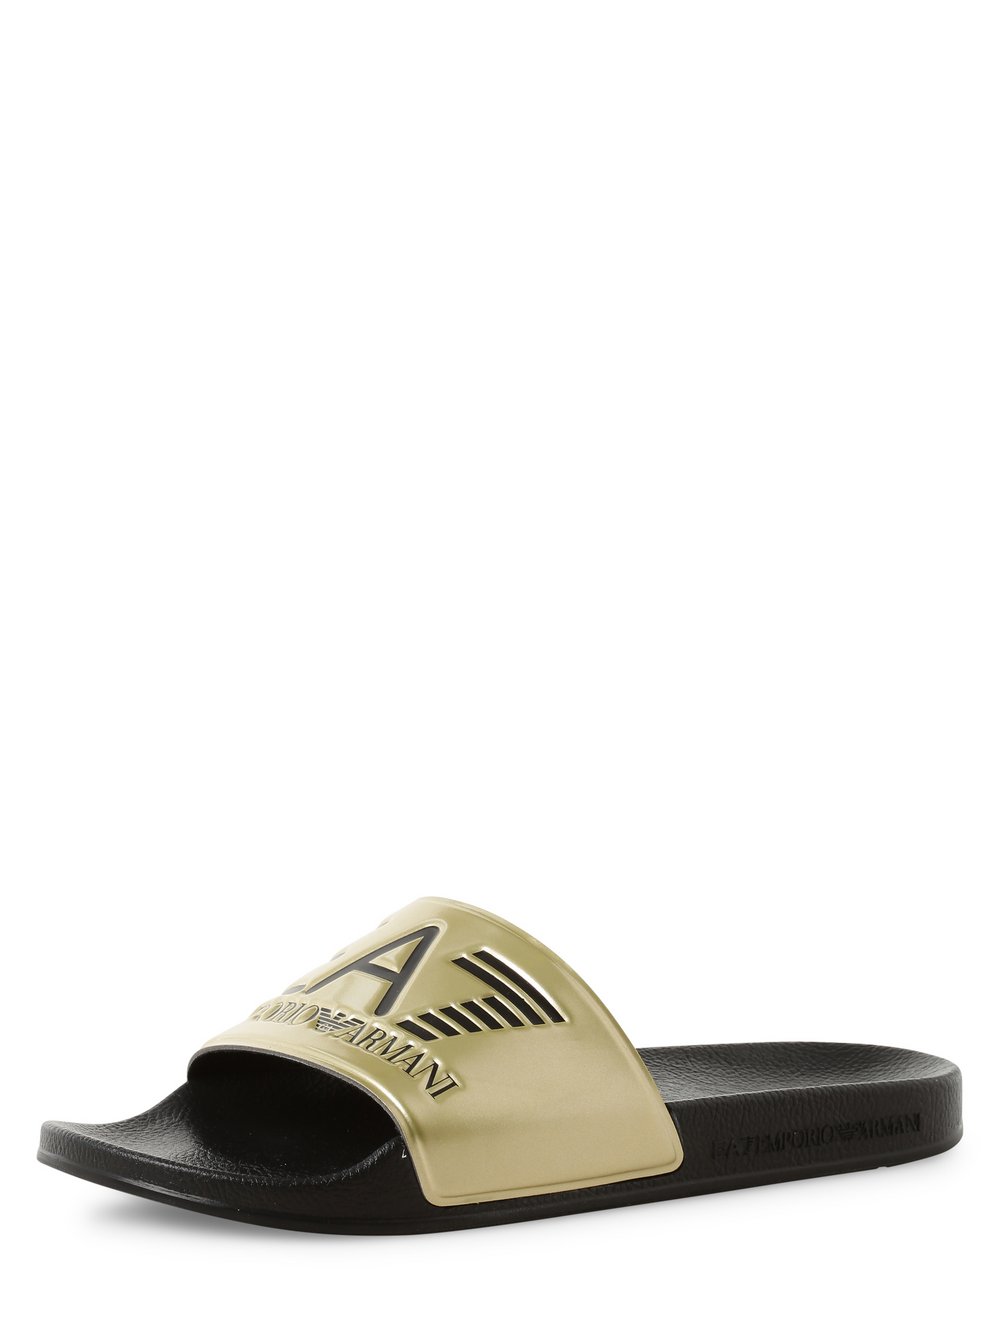 EA7 Emporio Armani - Męskie pantofle kąpielowe, złoty